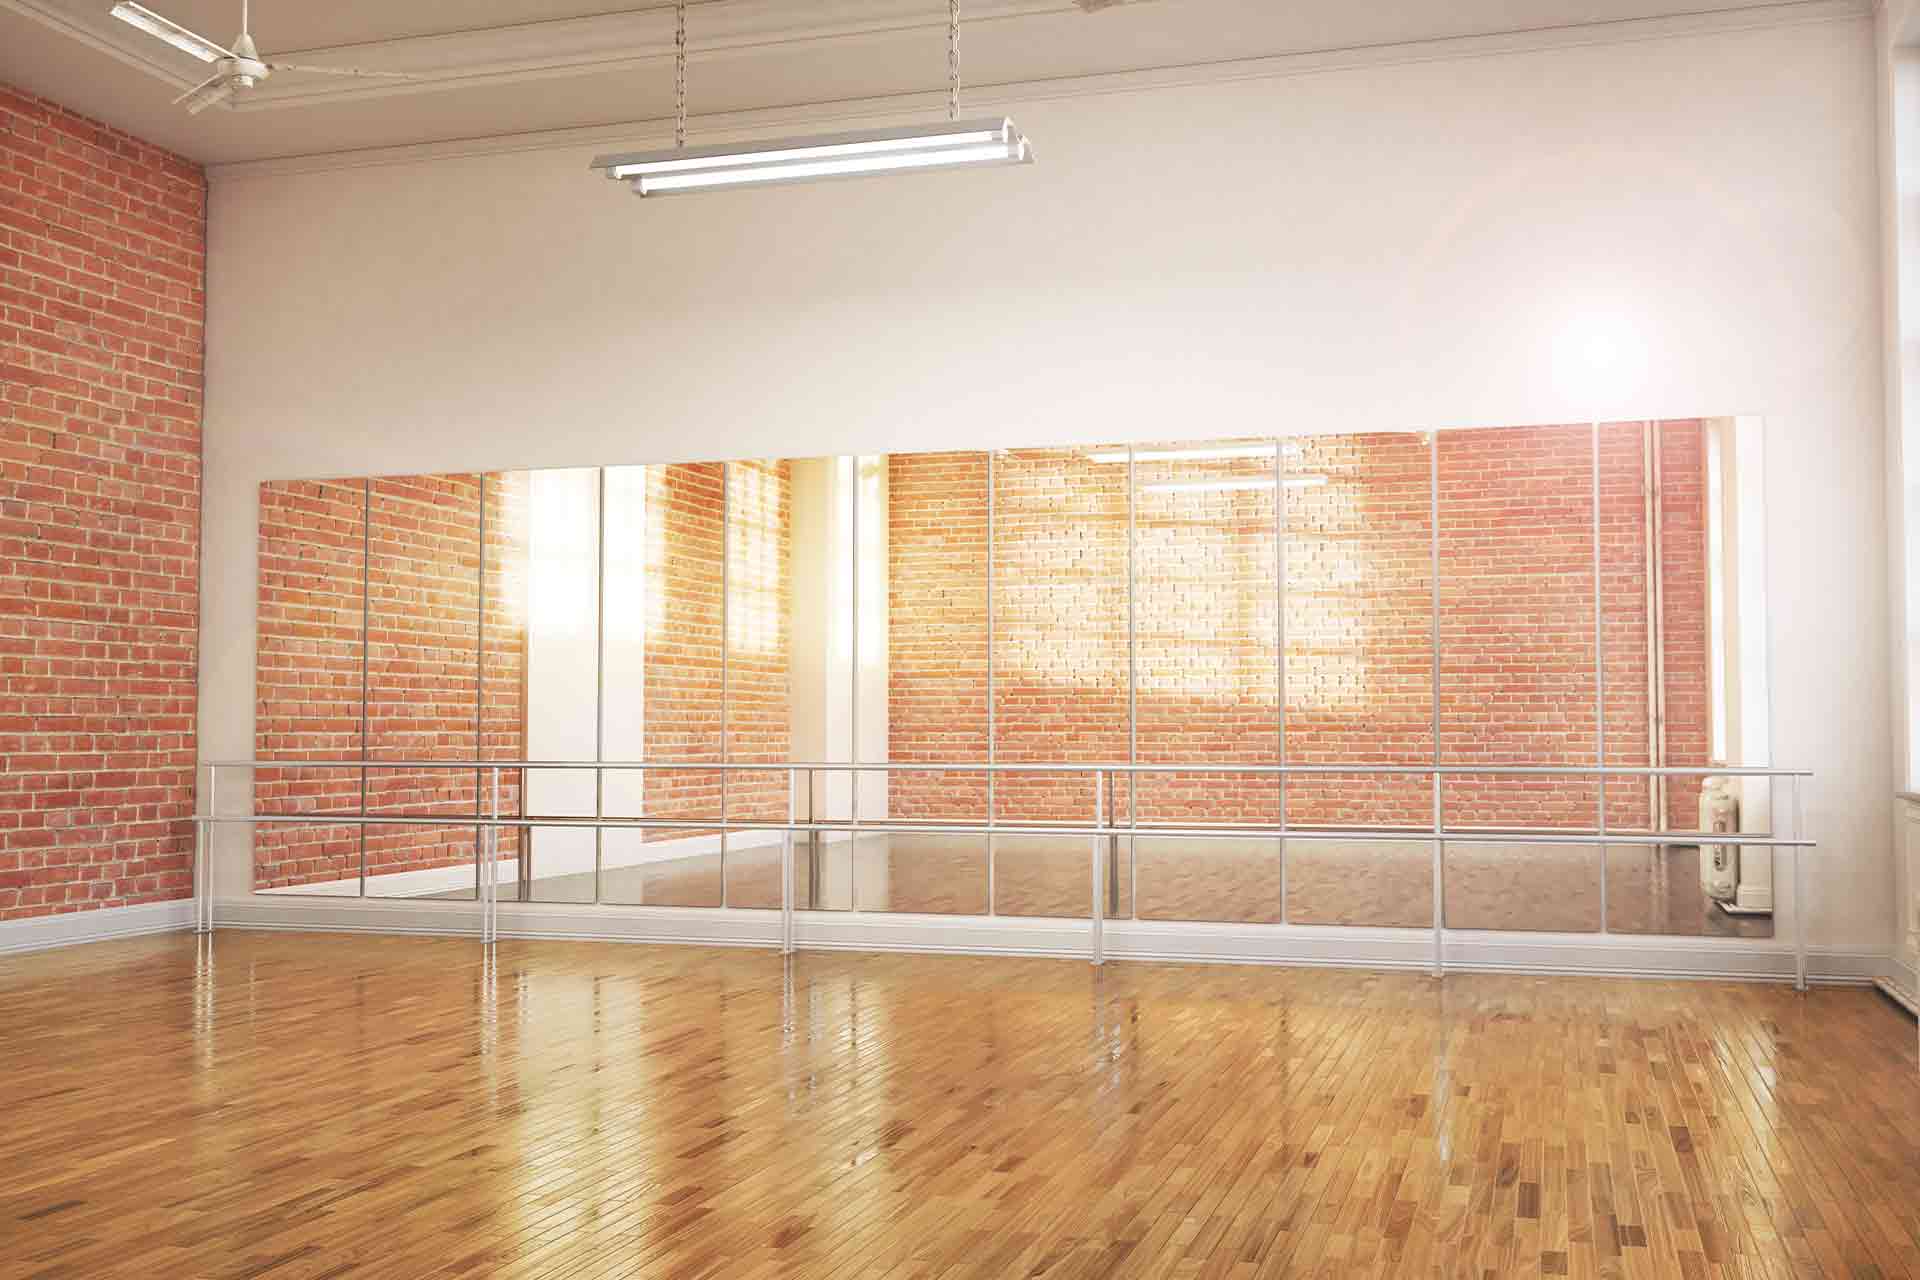 Second Floor Ballet Studio  Ballet studio, Second floor, Studio